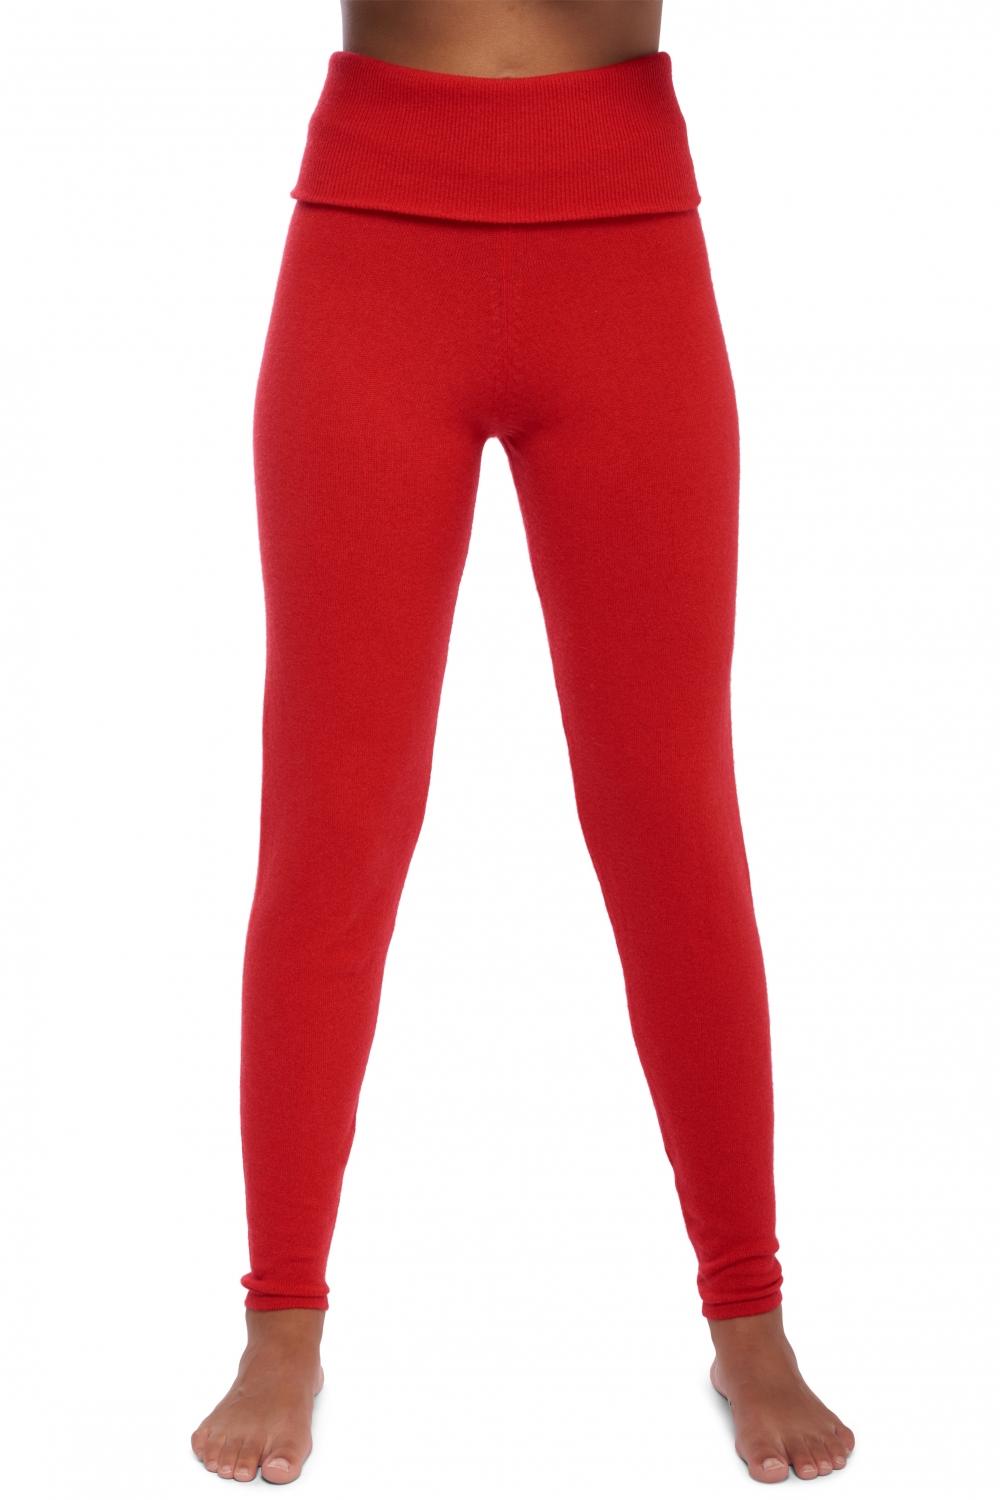 Cachemire pantalon legging femme shirley rouge s